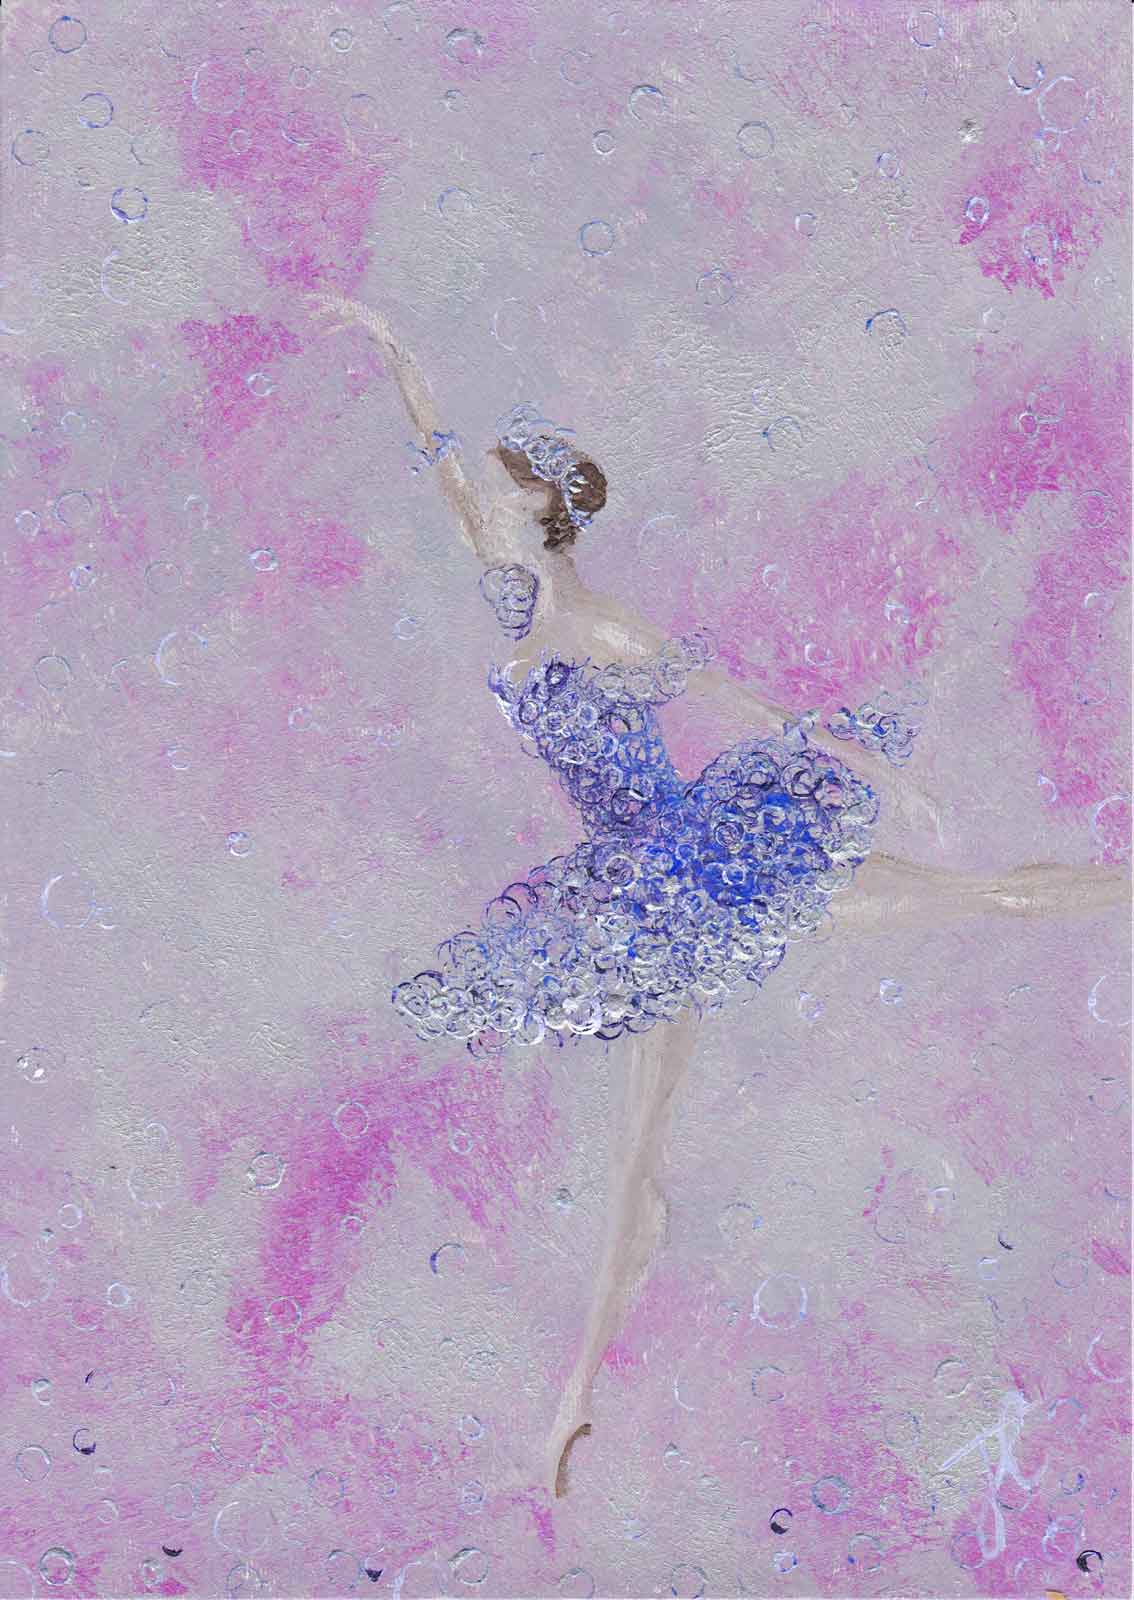 Ballerina painting of figure poised in romantic tutu